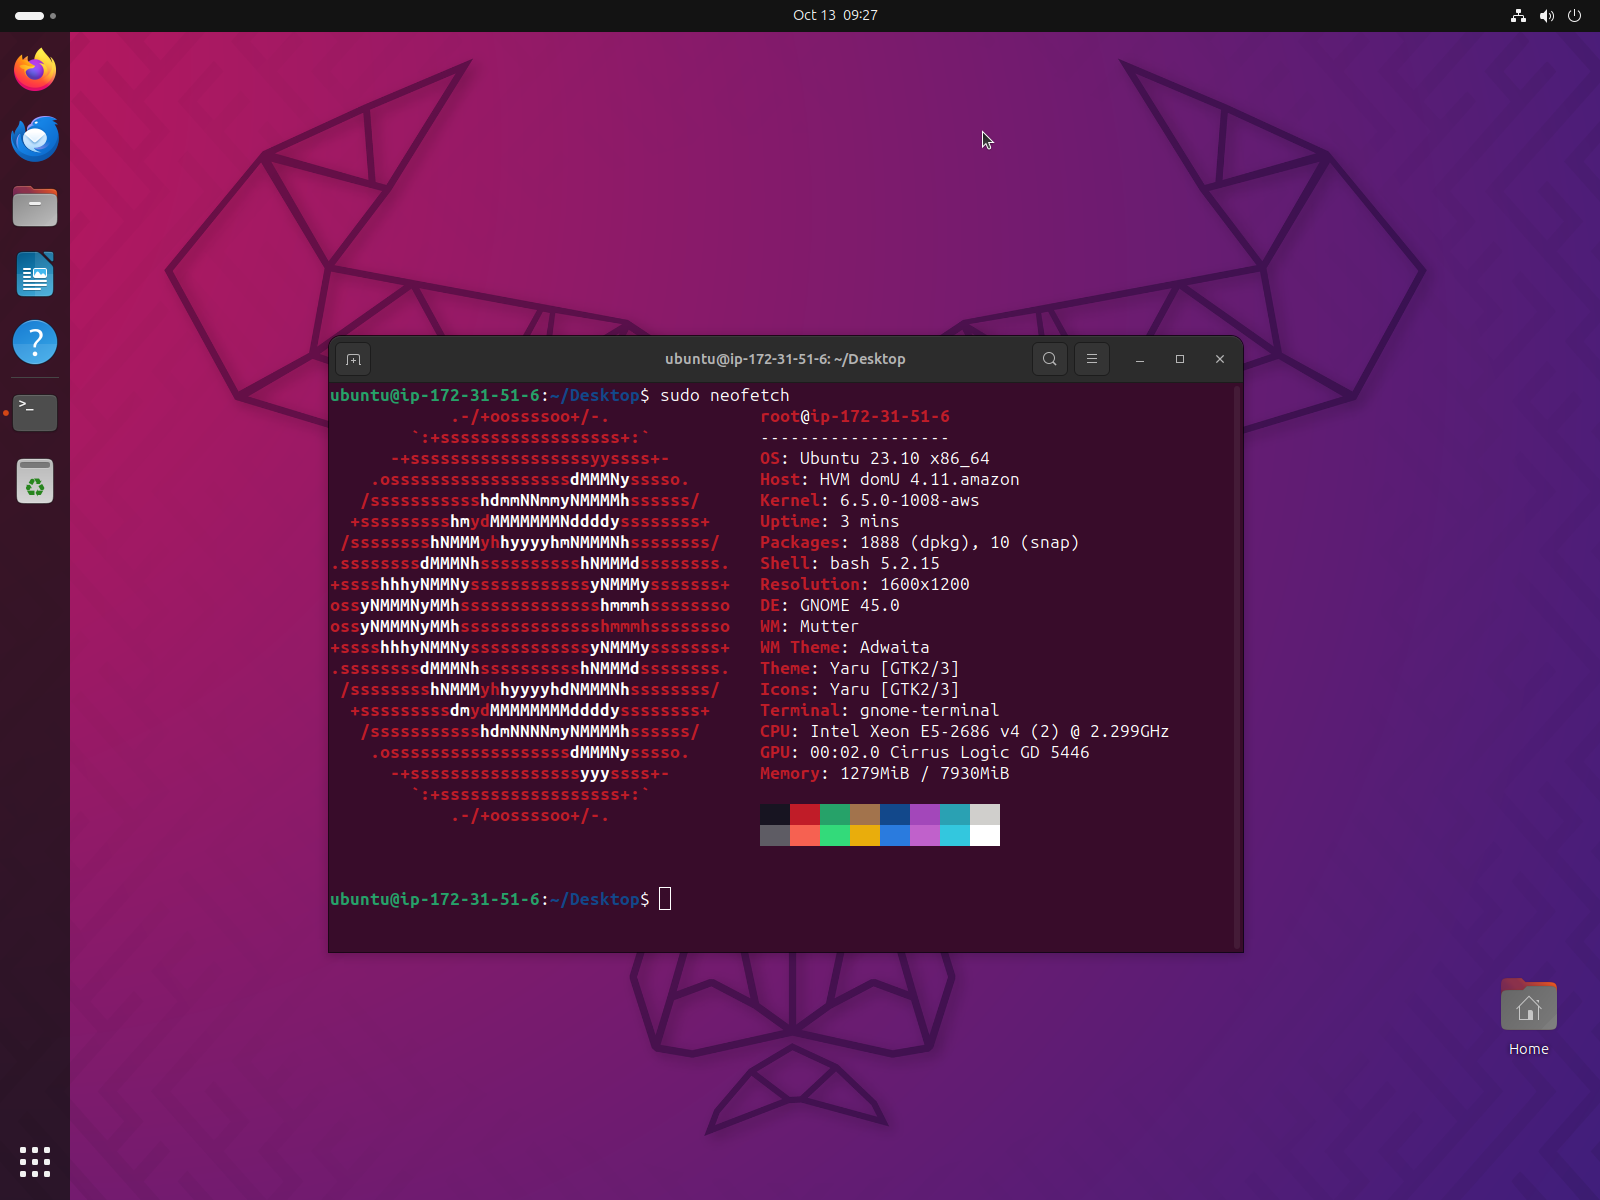 successfully Upgraded to Ubuntu 23.10